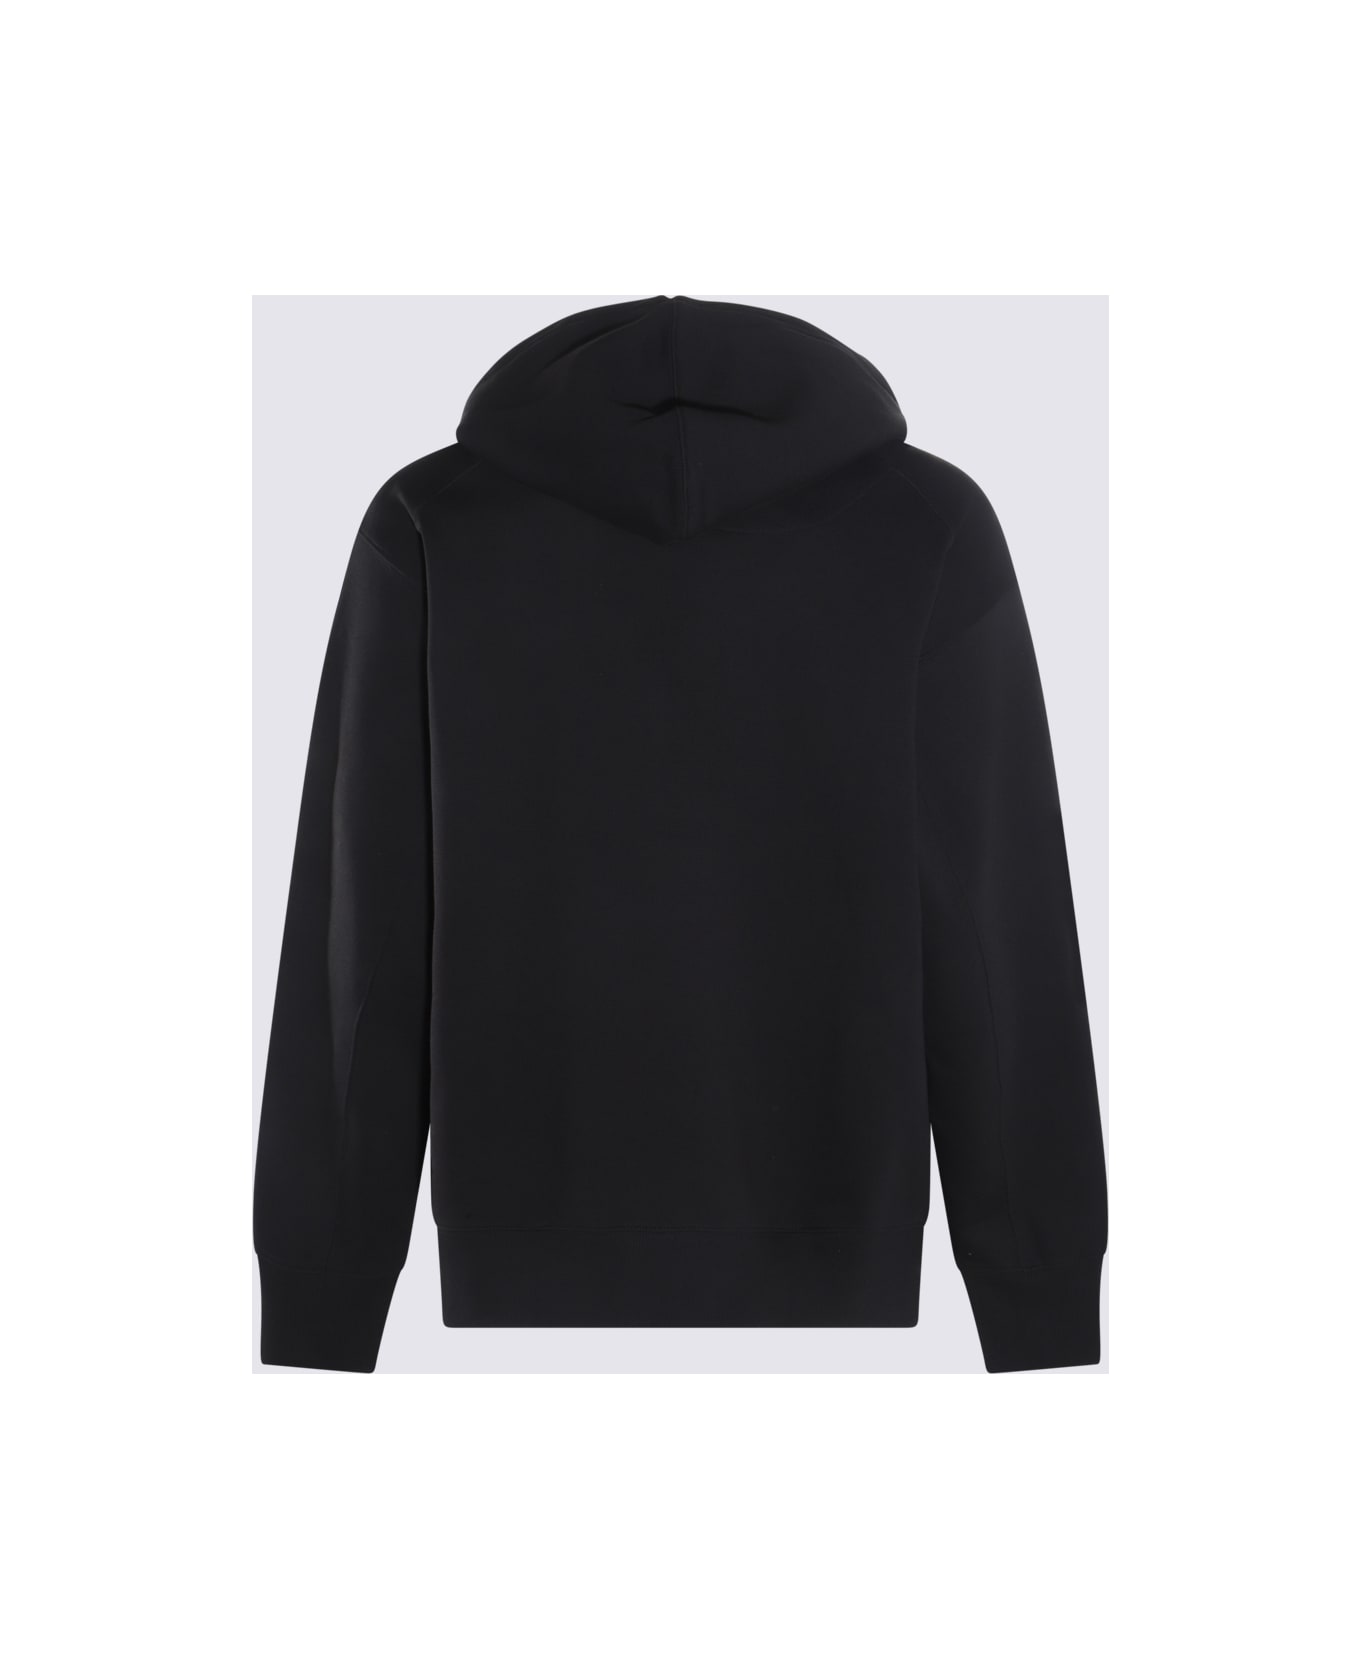 Y-3 Black Cotton Sweatshirt - Black